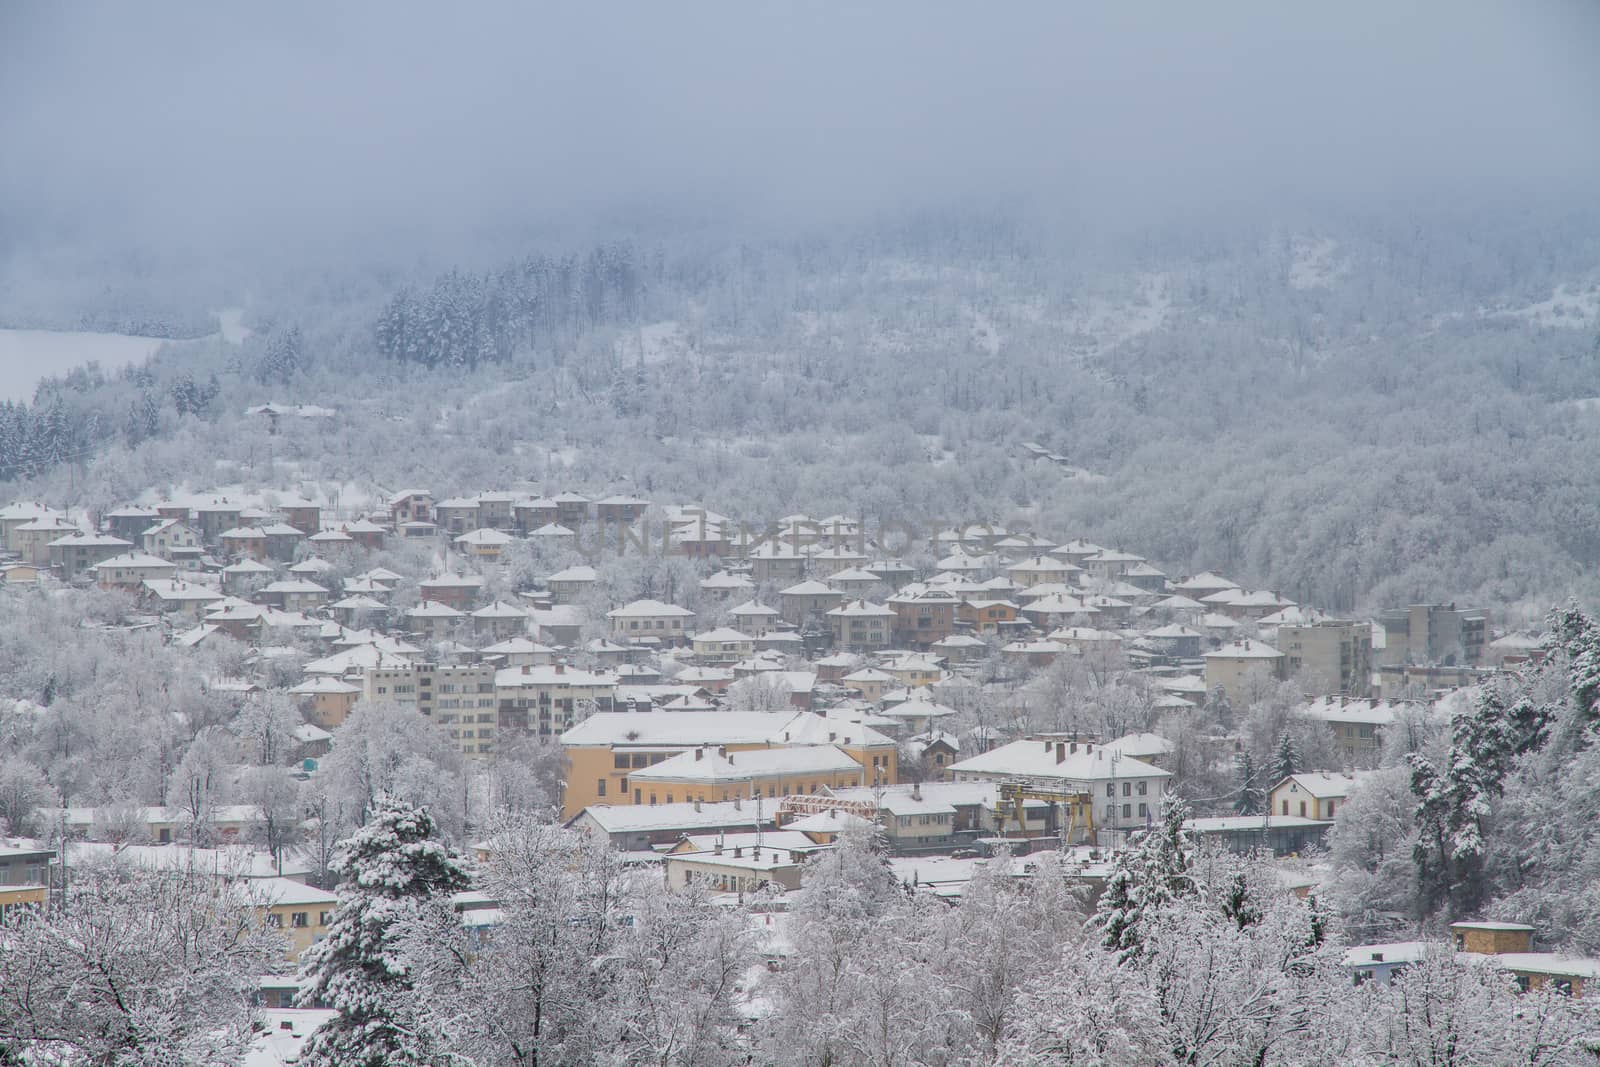 The village Tryavna in winter